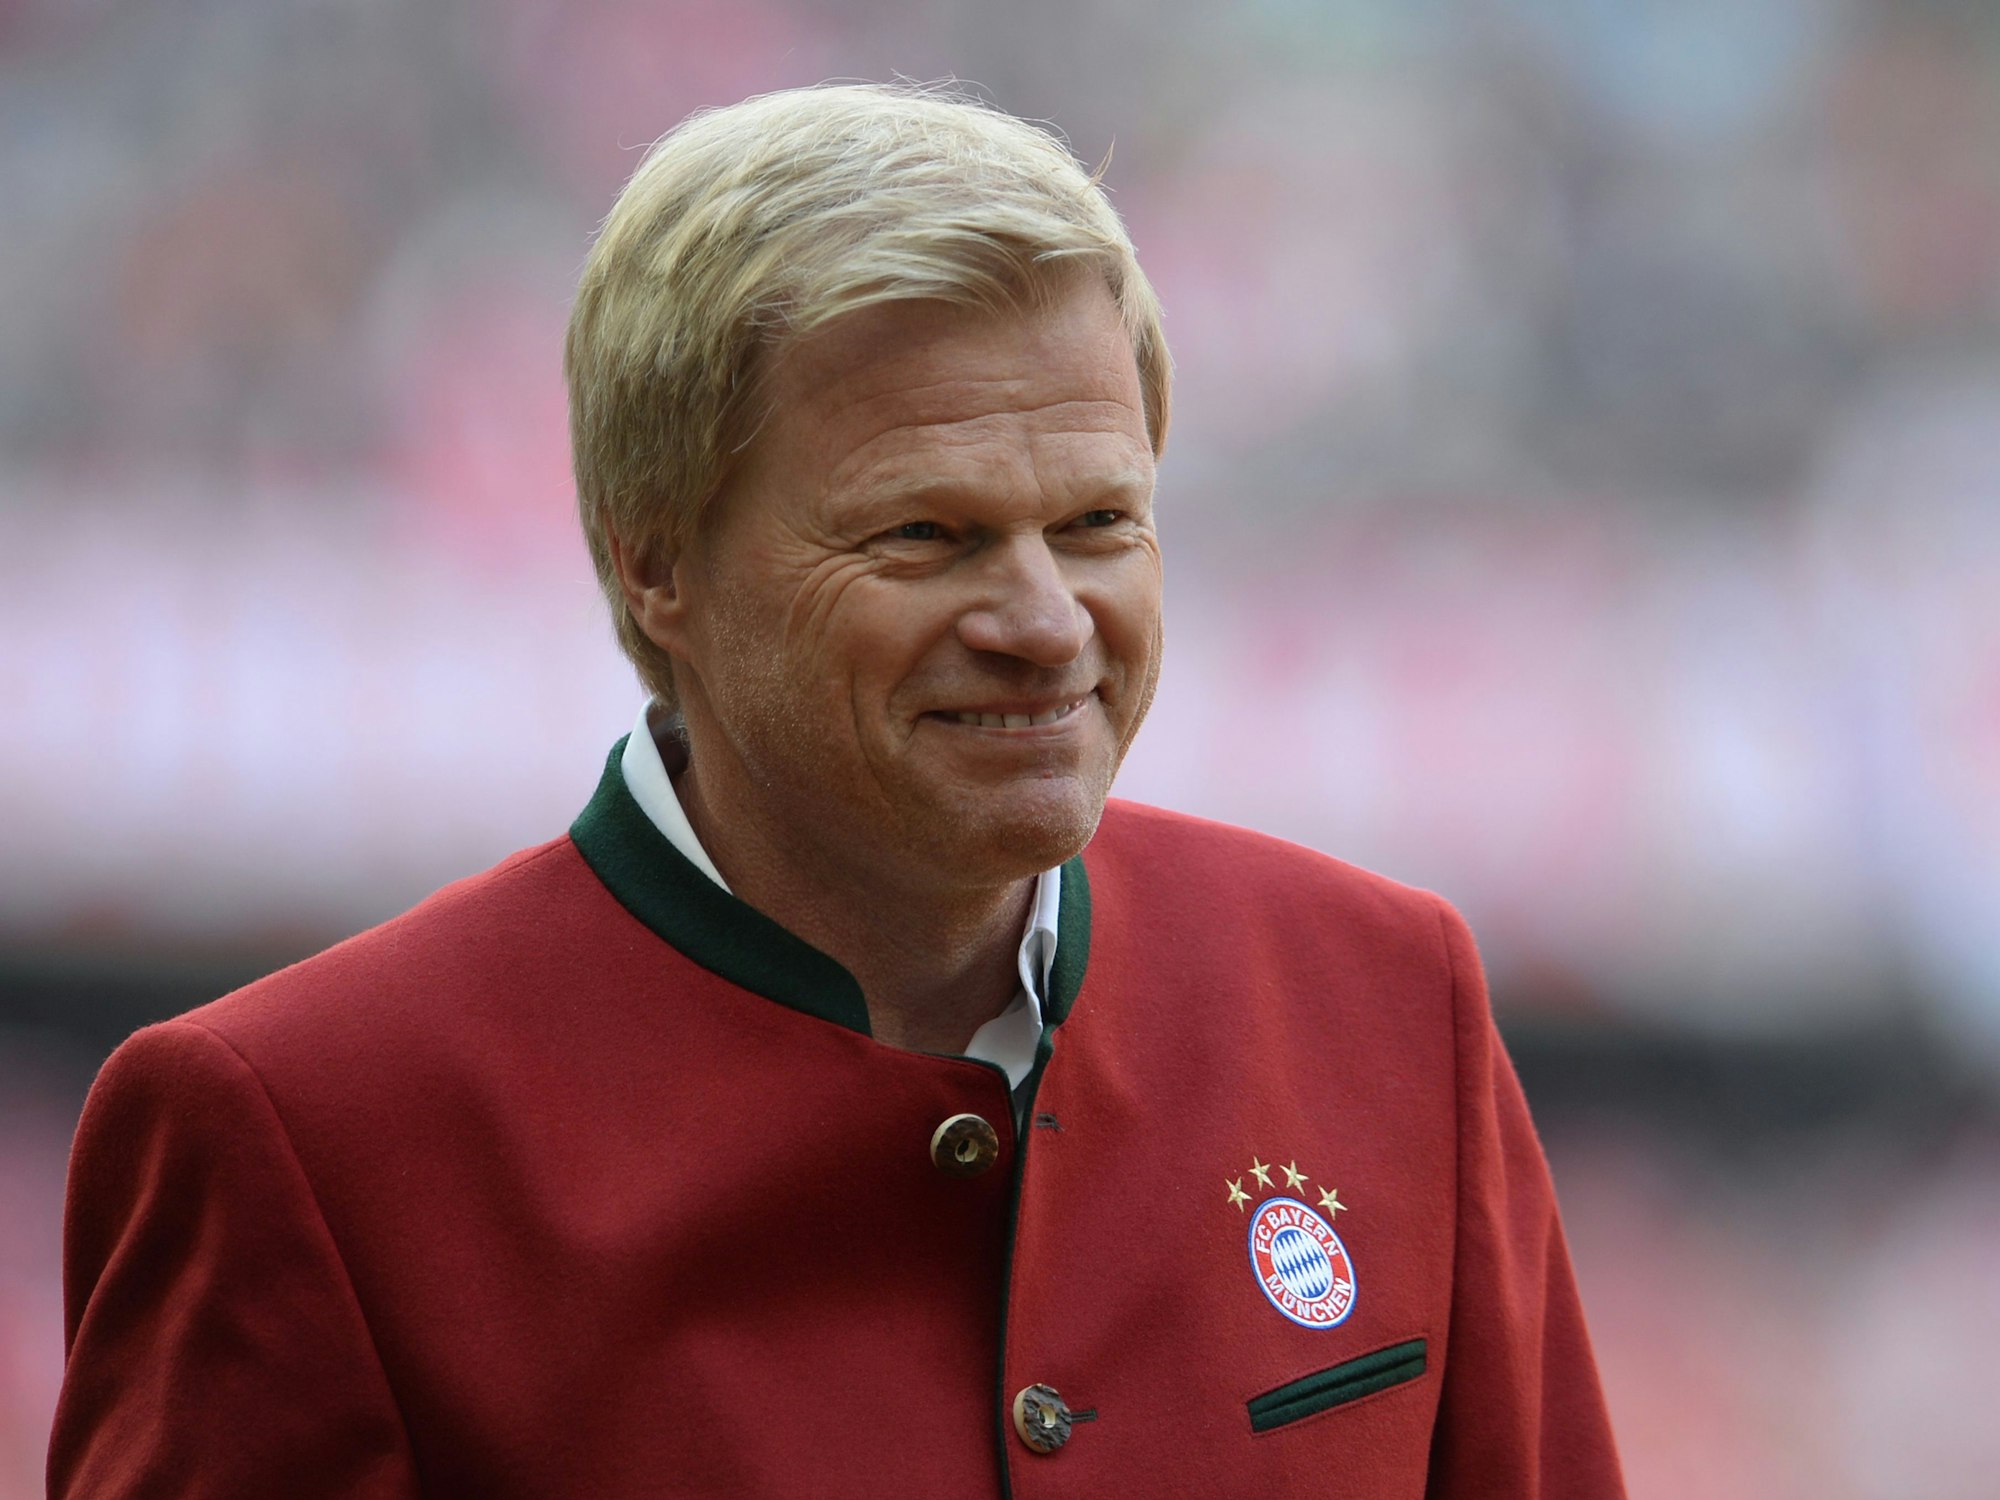 Der ehemalige Bayern-Profi Oliver Kahn kommt zur Ehrung der Meistermannschaften ins Stadion.